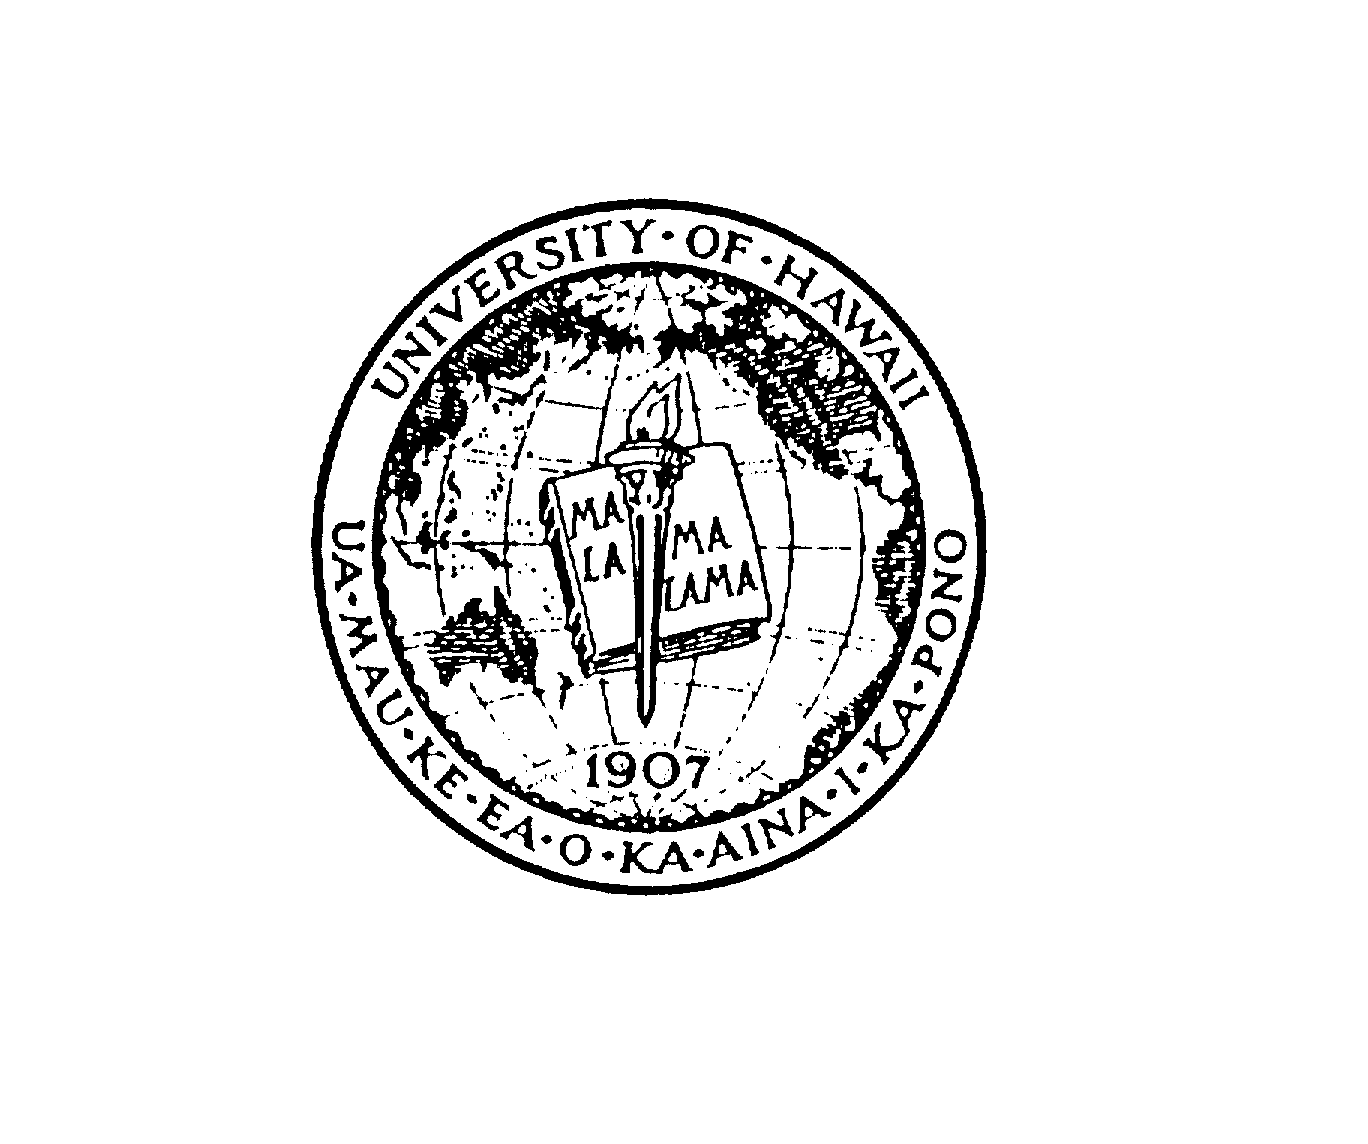  UNIVERSITY OF HAWAII UA MAU KE EA O KA AINA I KA PONO MALAMALAMA 1907